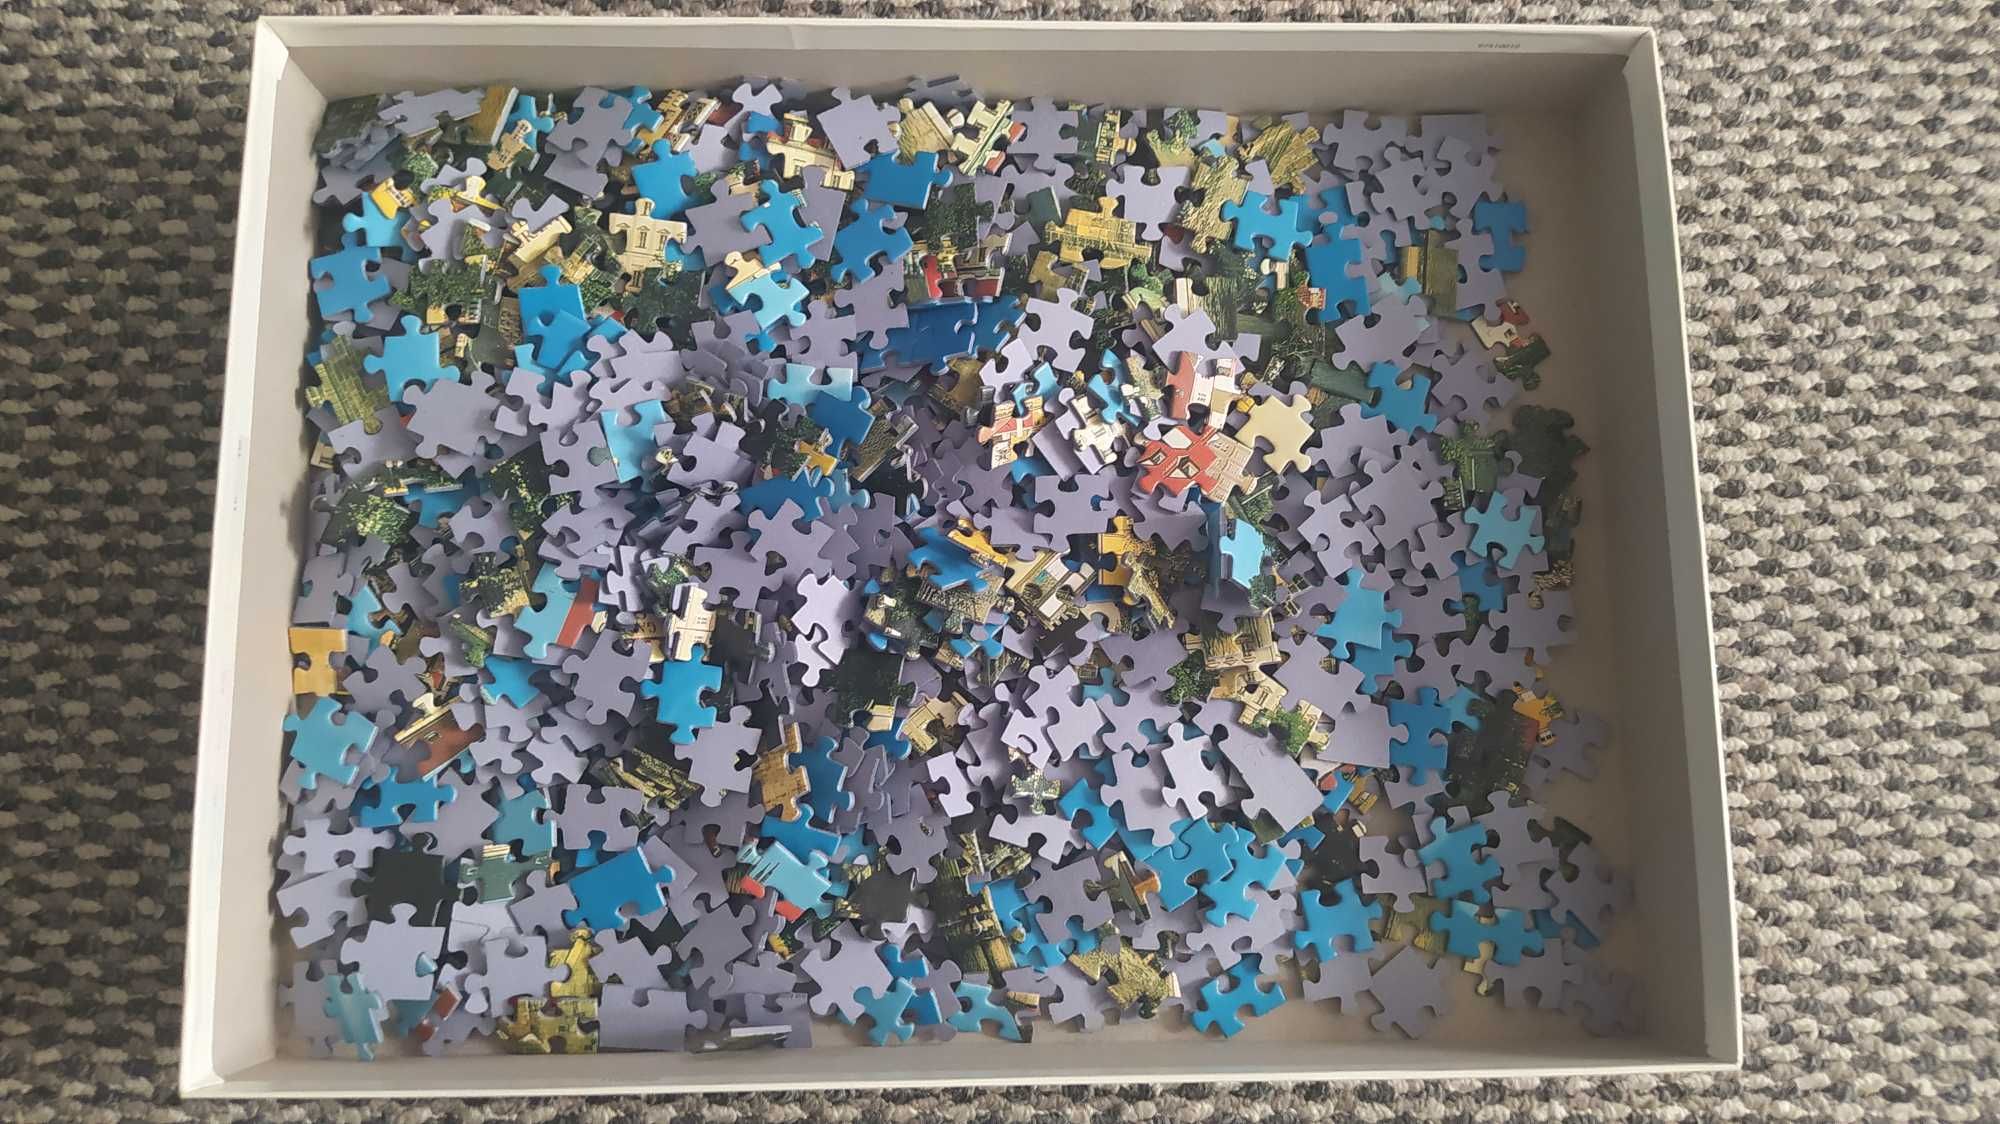 Puzzle 1000 Praga